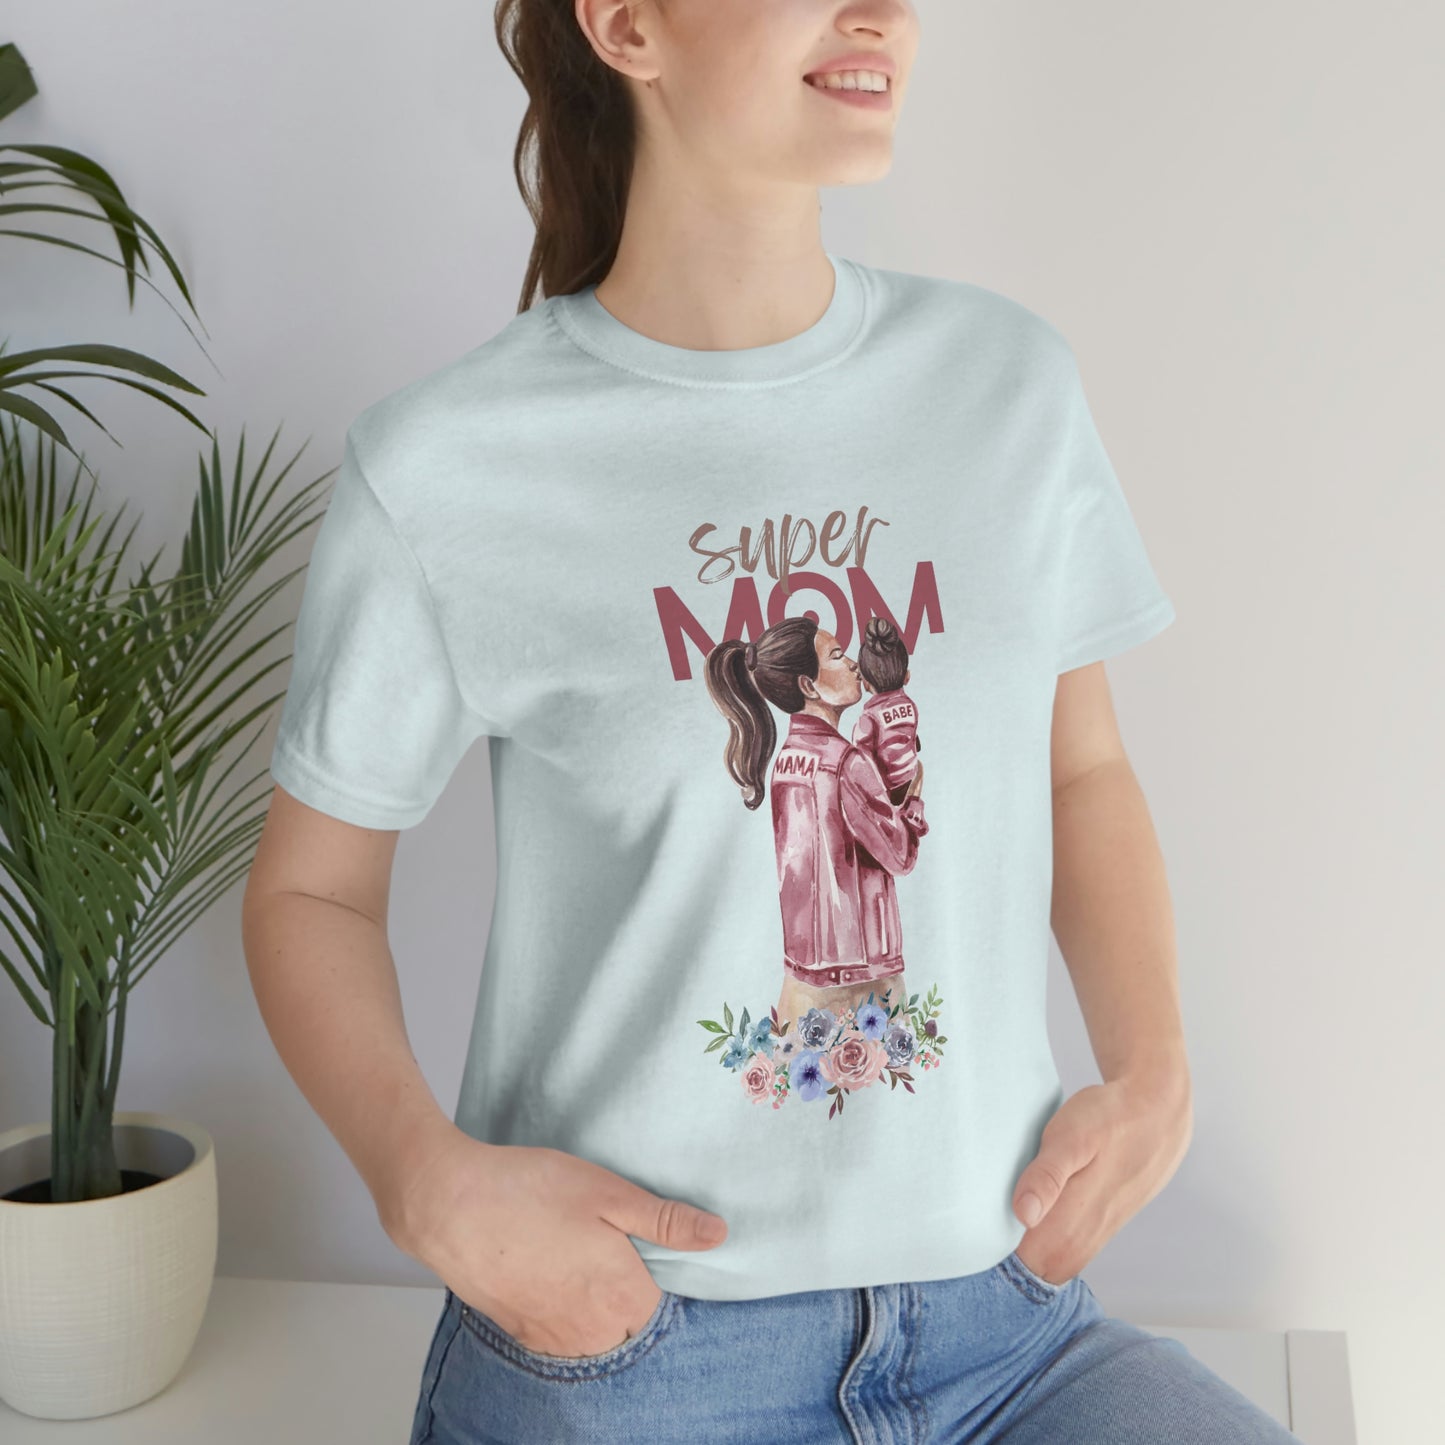 Super Mom Women T-shirt